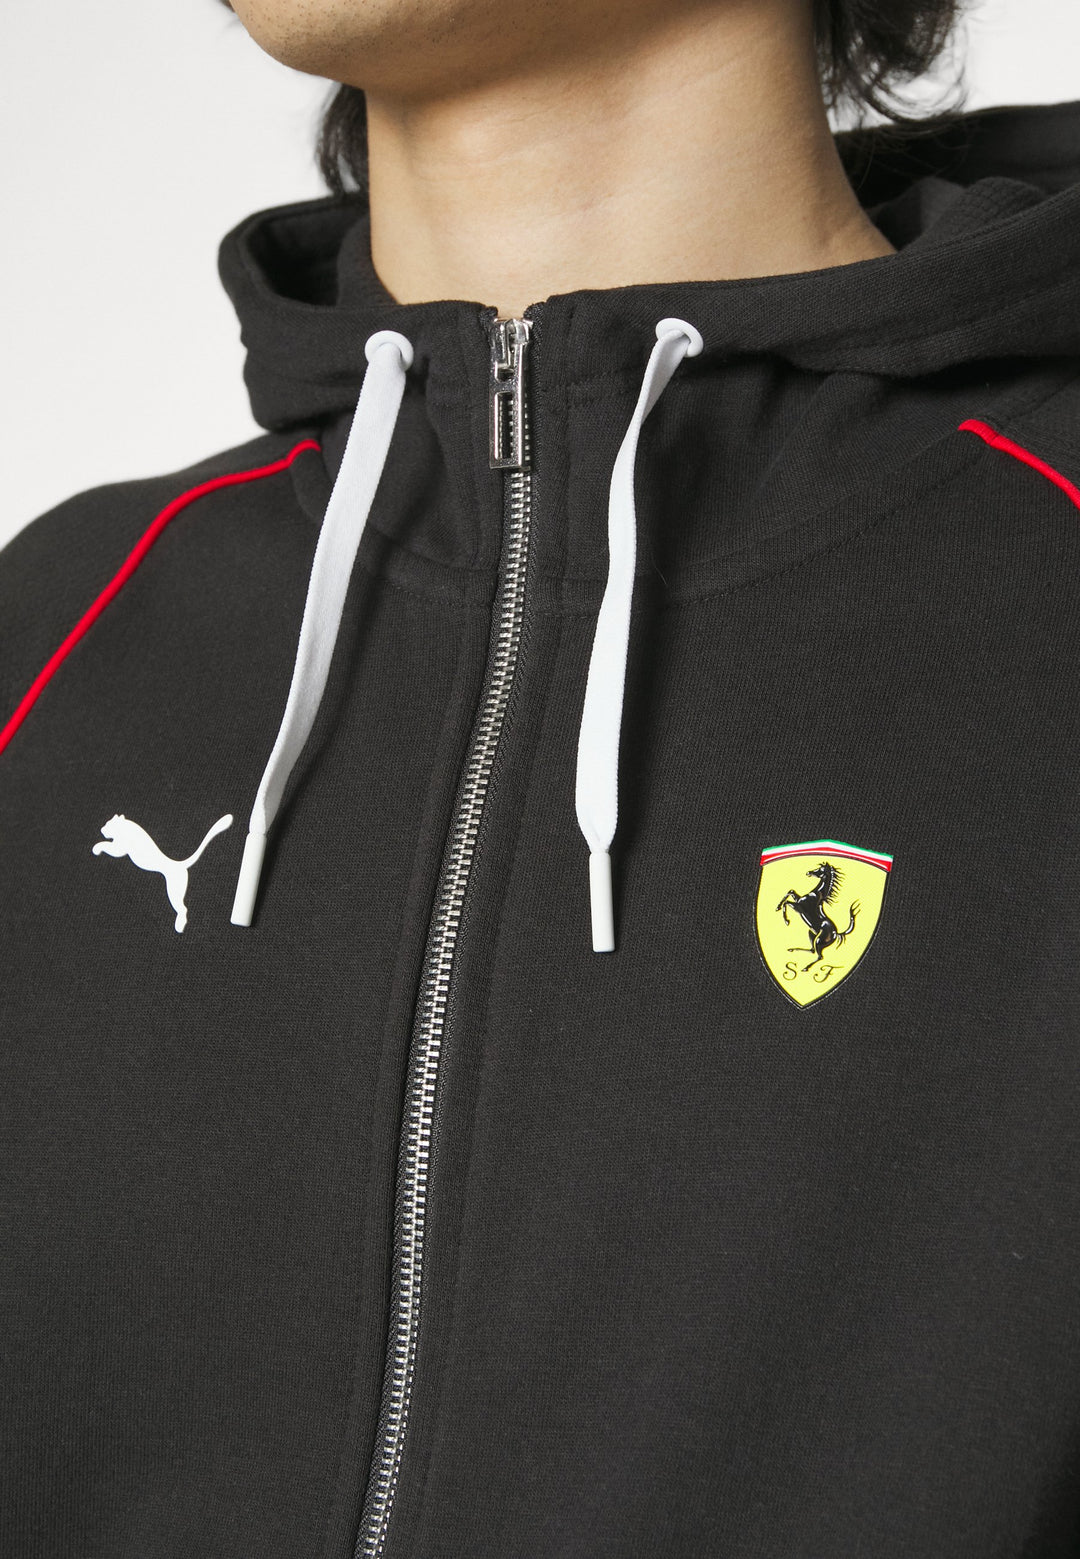 Veste de survêtement Puma Scuderia Ferrari Race T7 pour homme - Homme - Noir